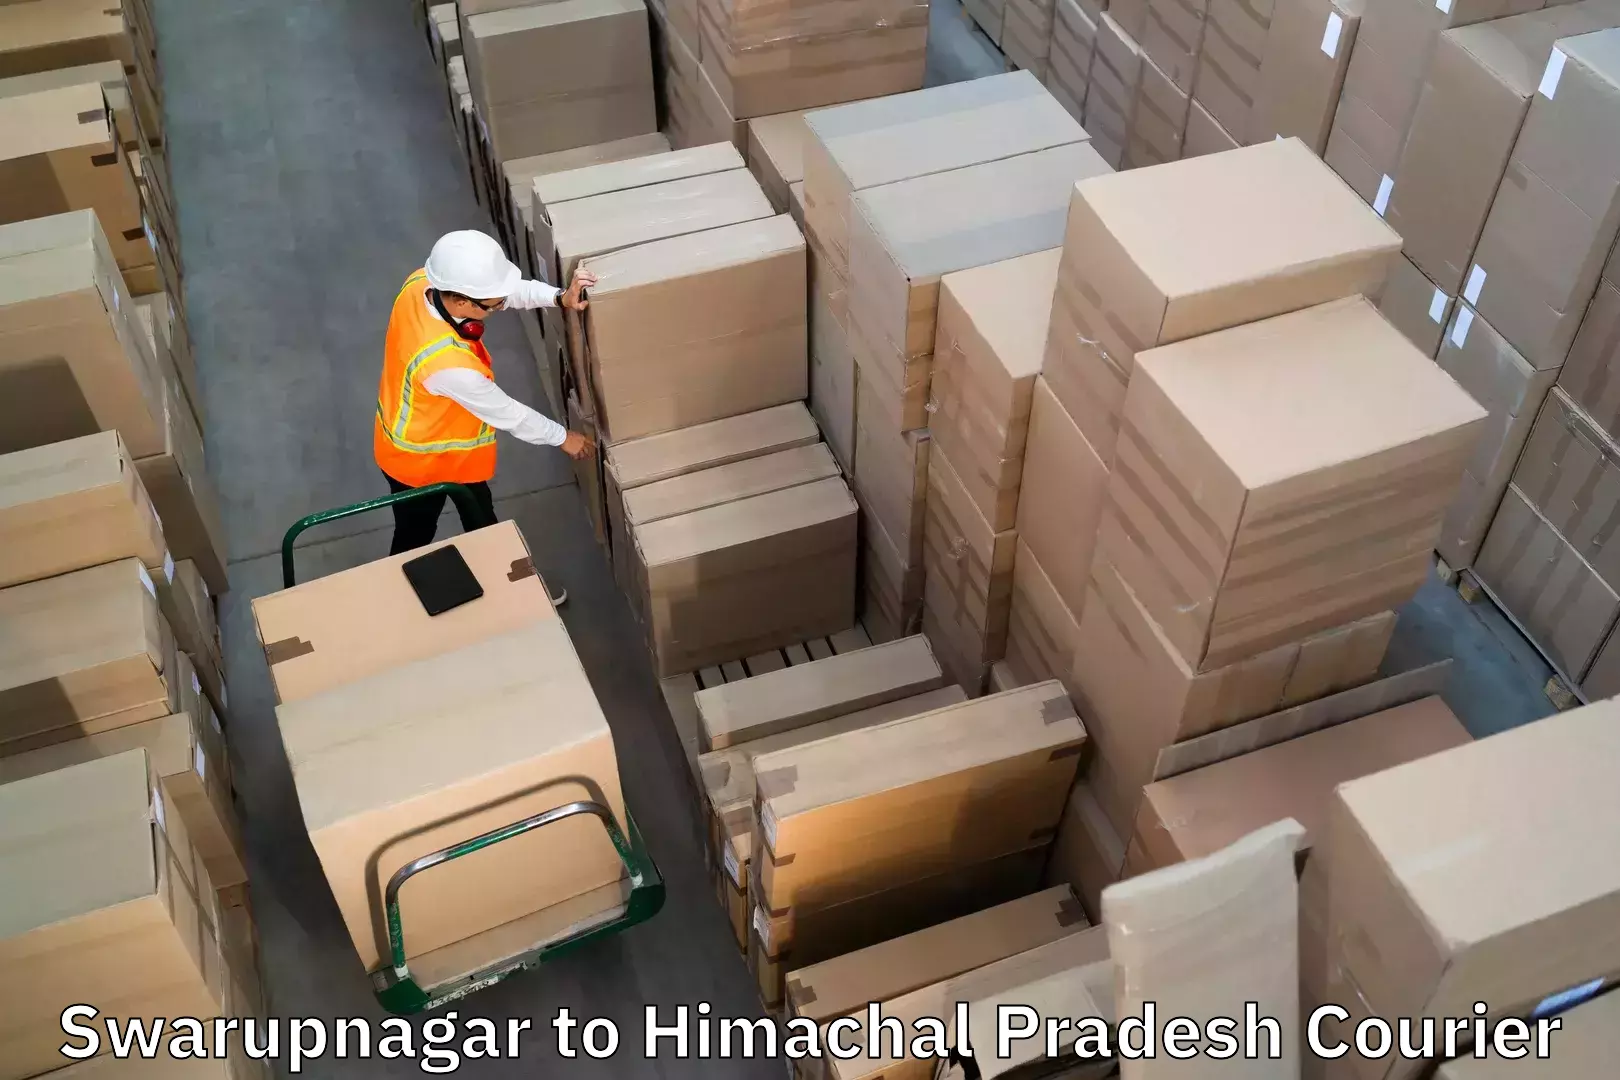 Baggage shipping experience Swarupnagar to Nirmand